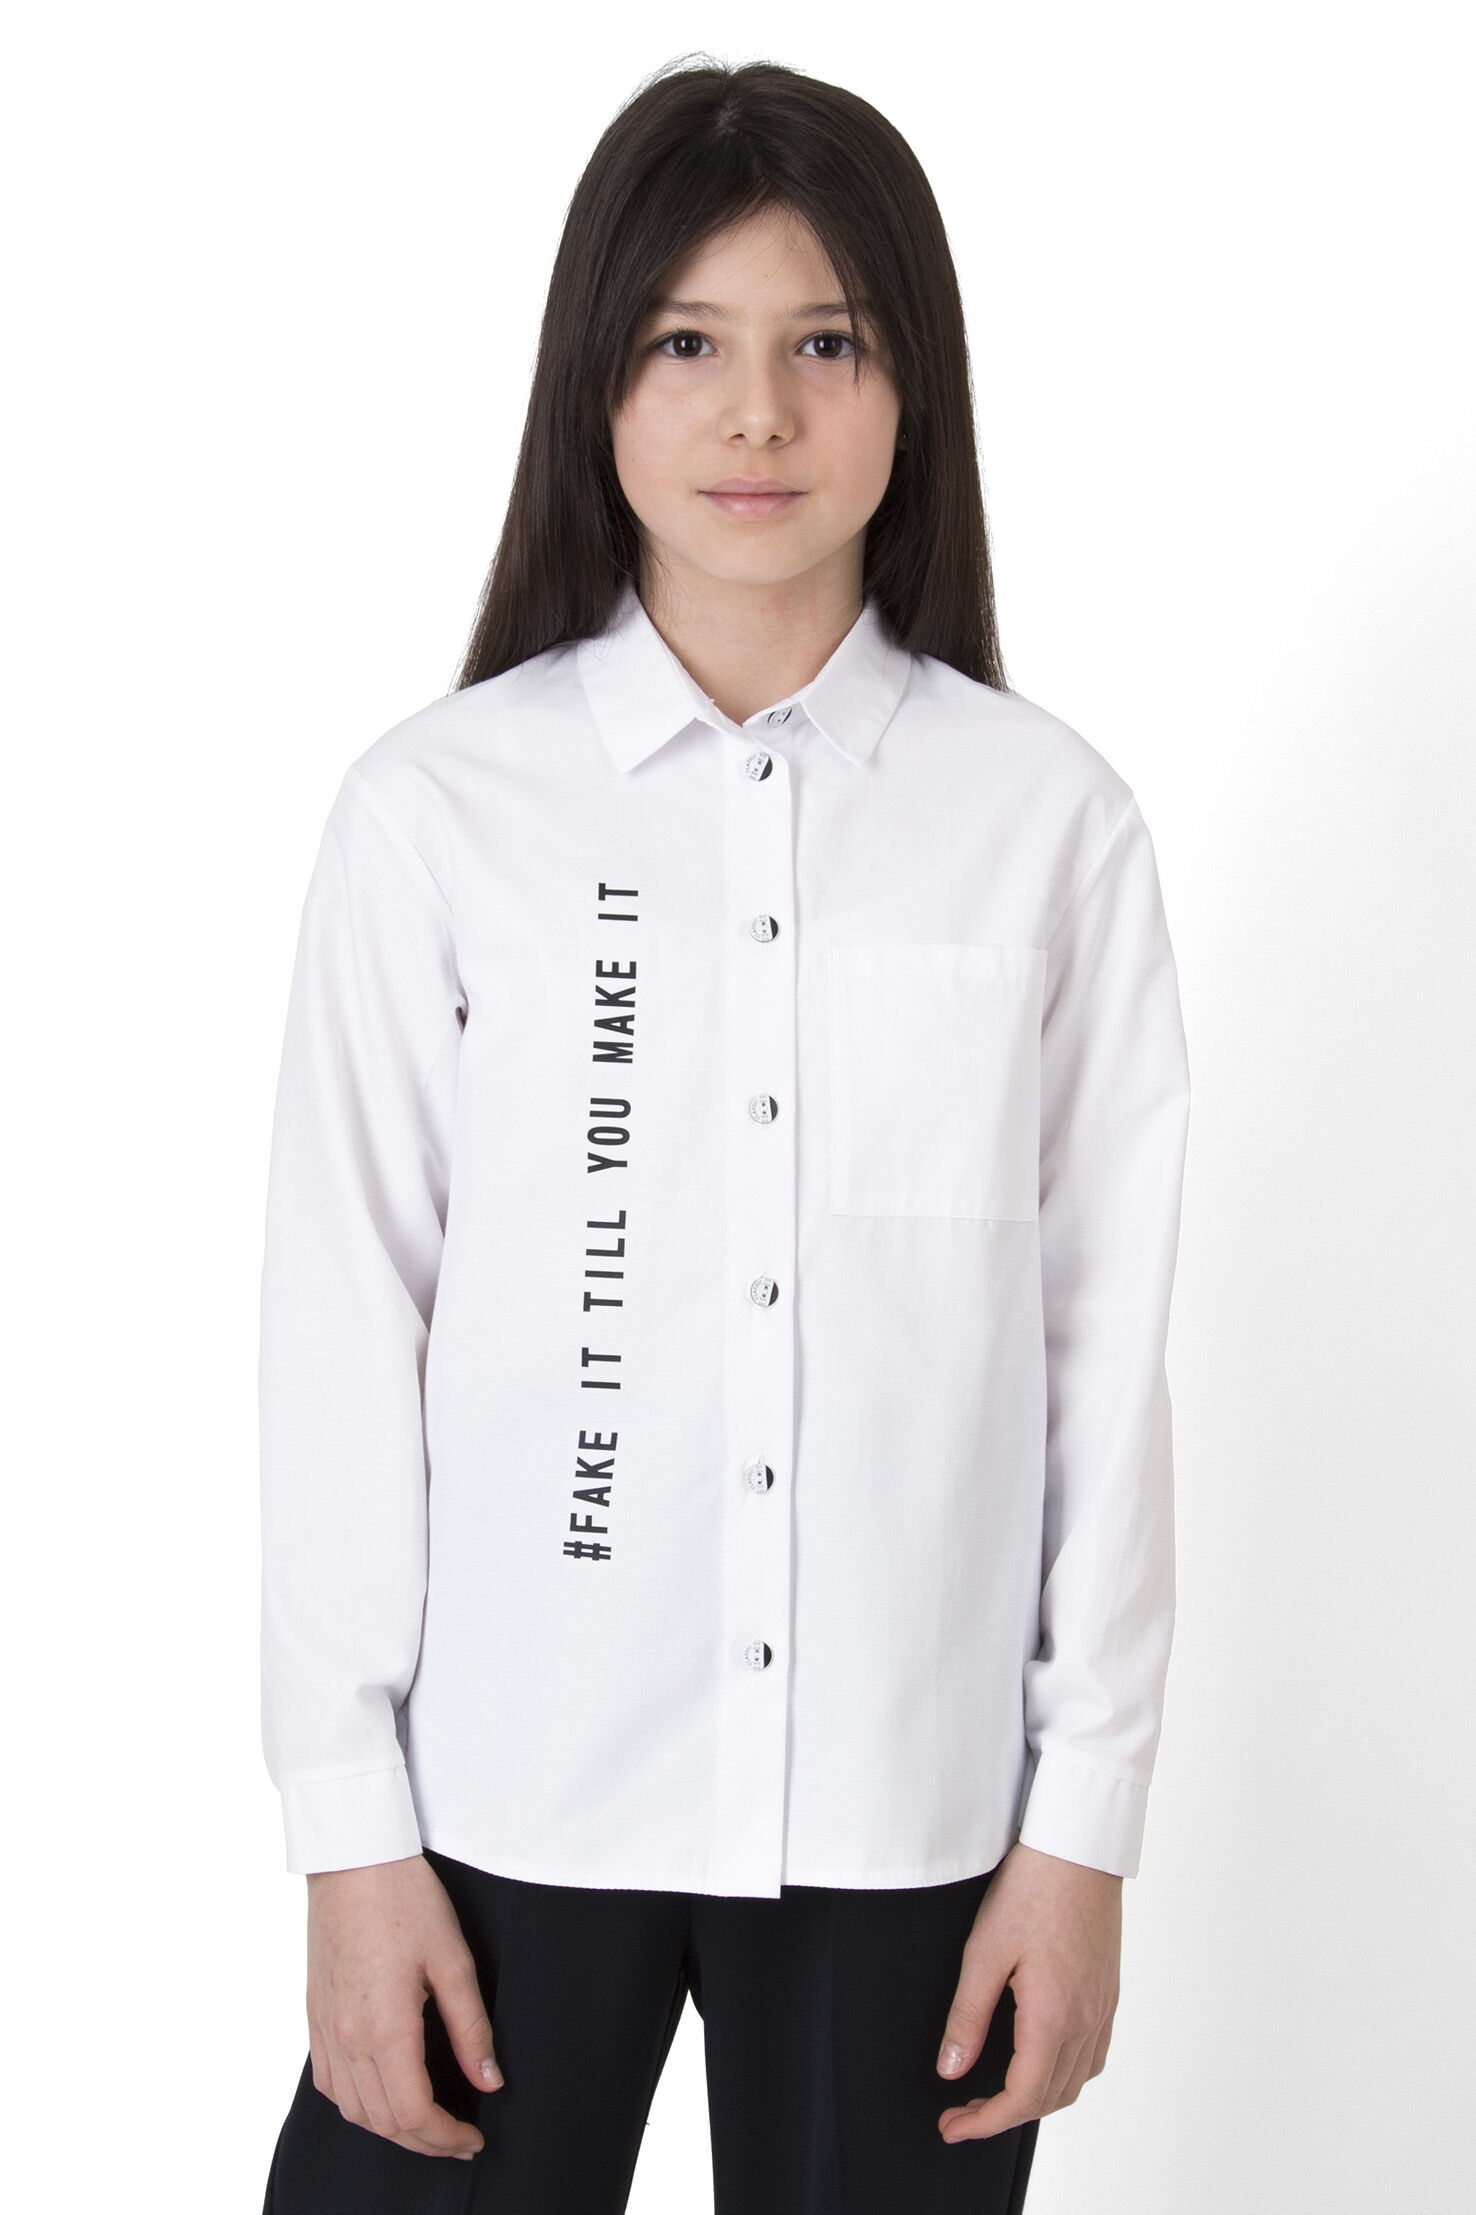 Рубашка коттоновая для девочки Mevis белая 4145-01 - фото